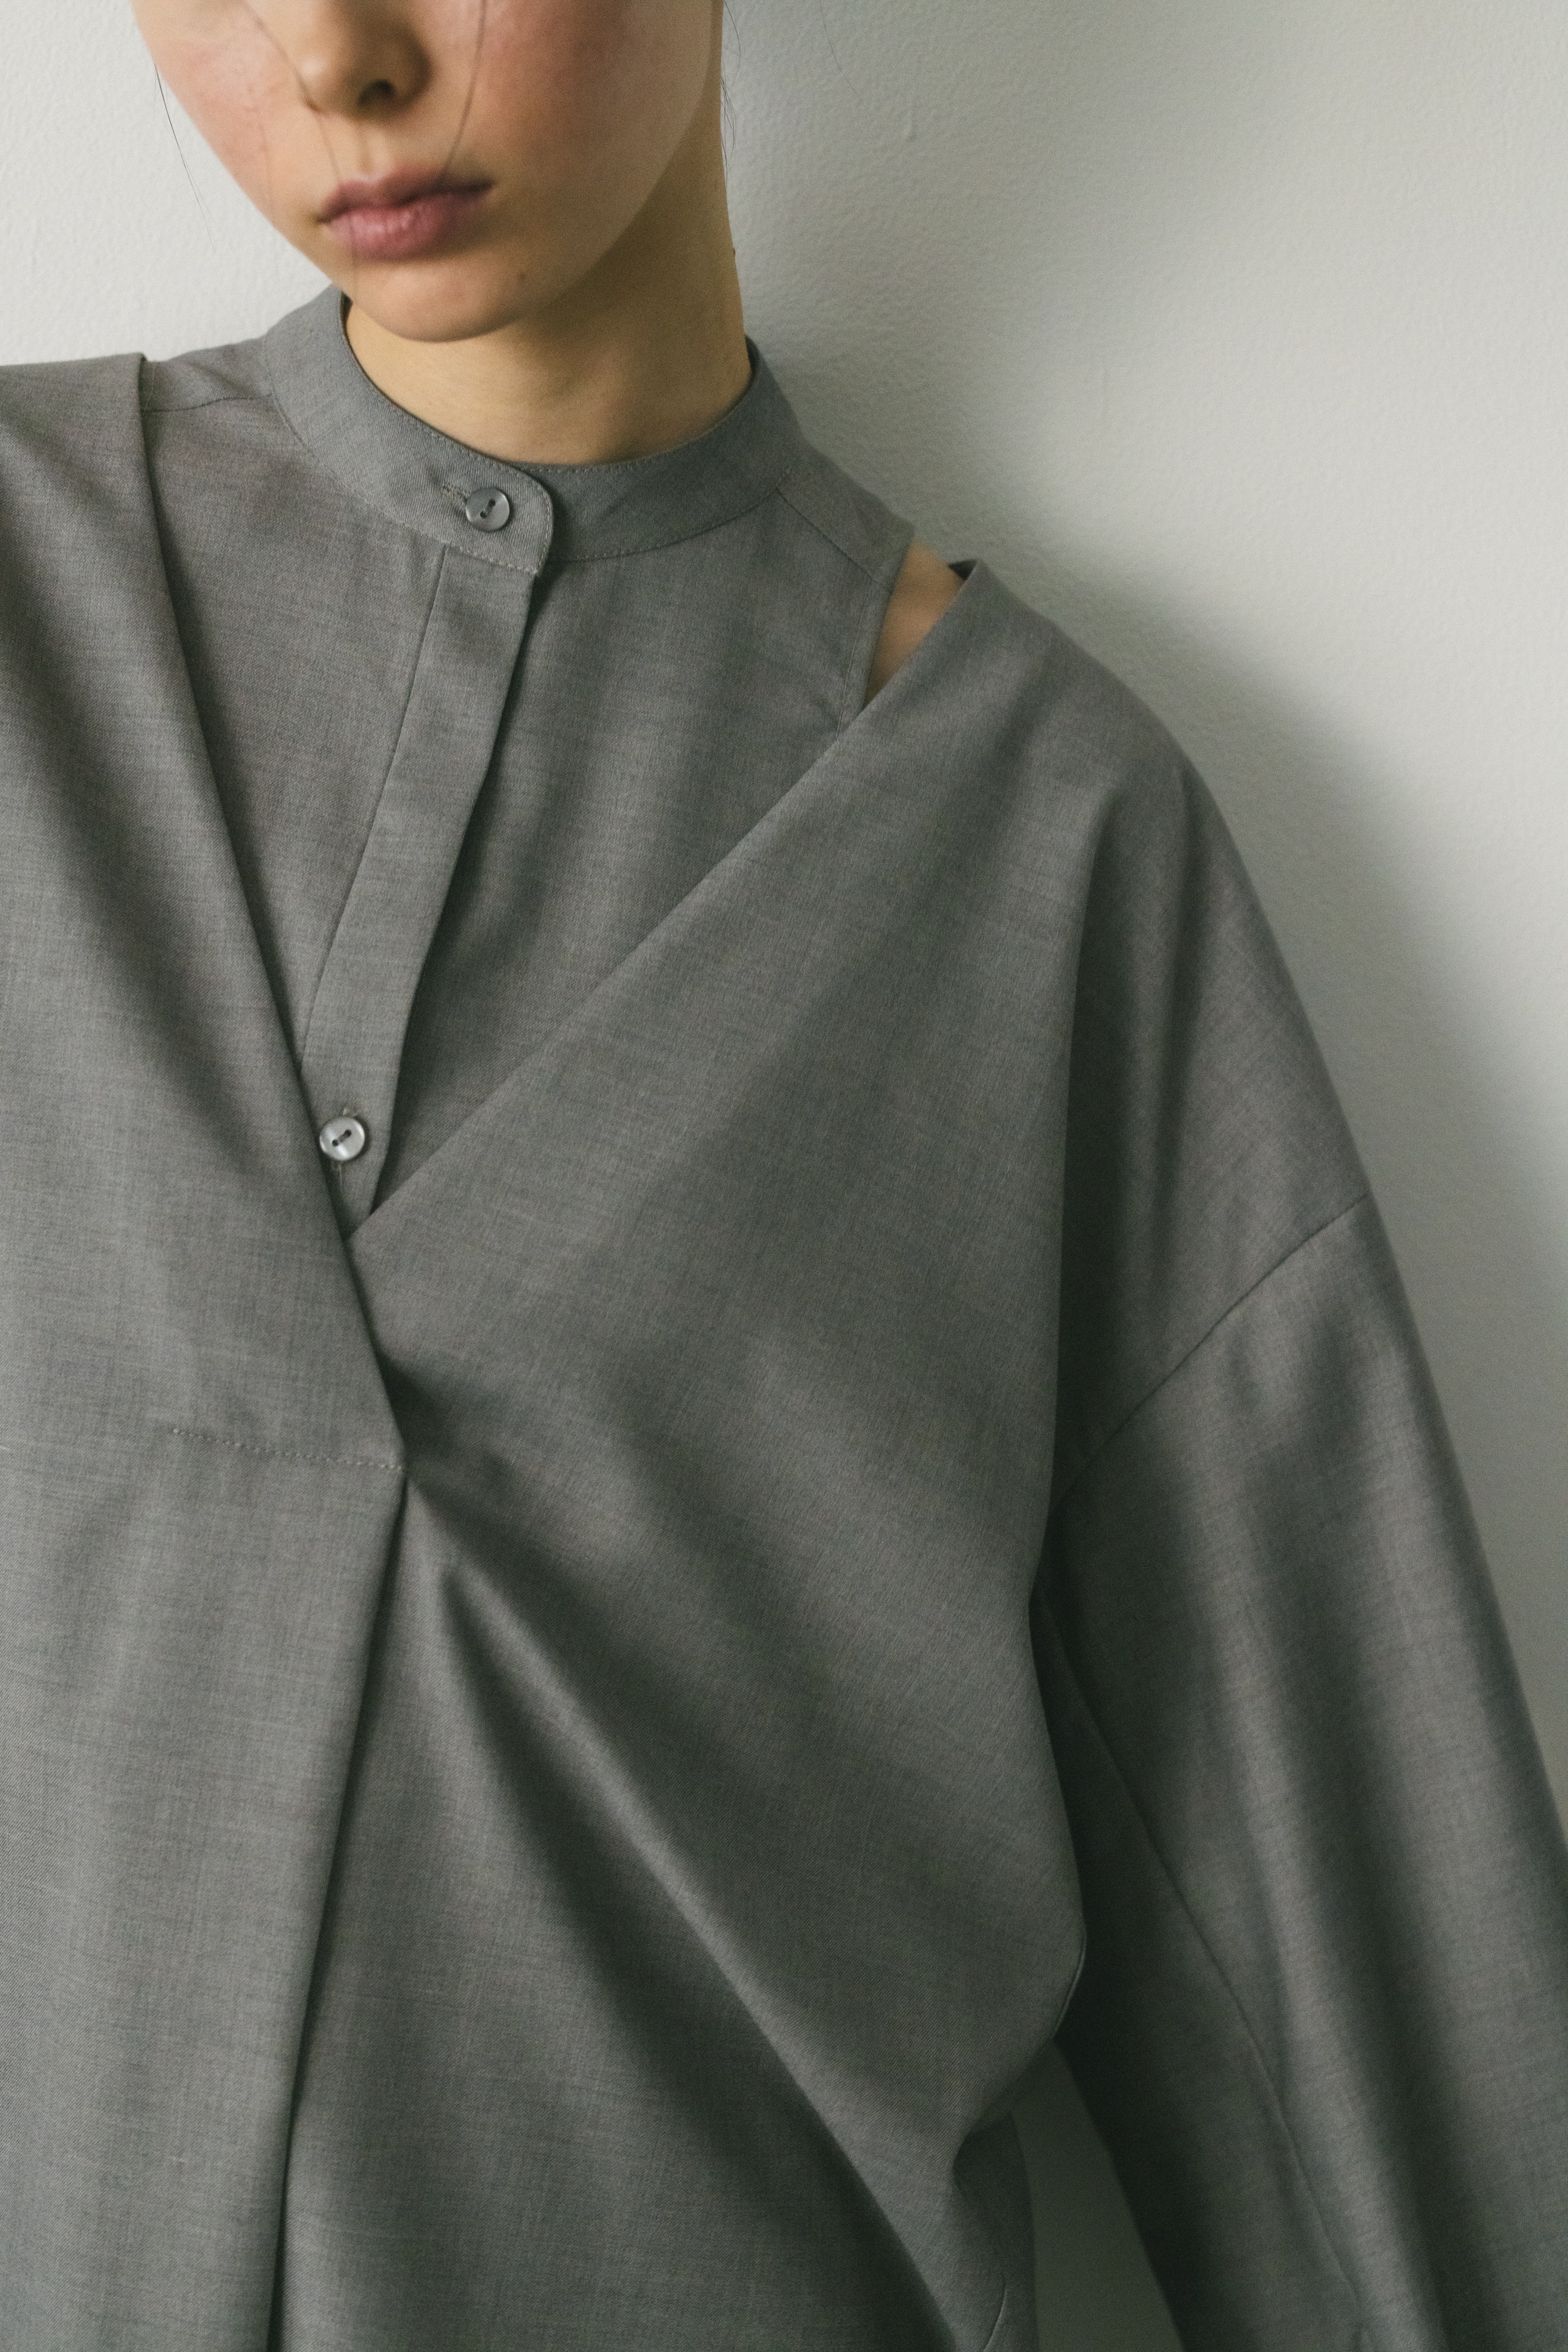 STYLEMIXER | 2ピースアメスリレイヤードシャツ (シャツ・ブラウス